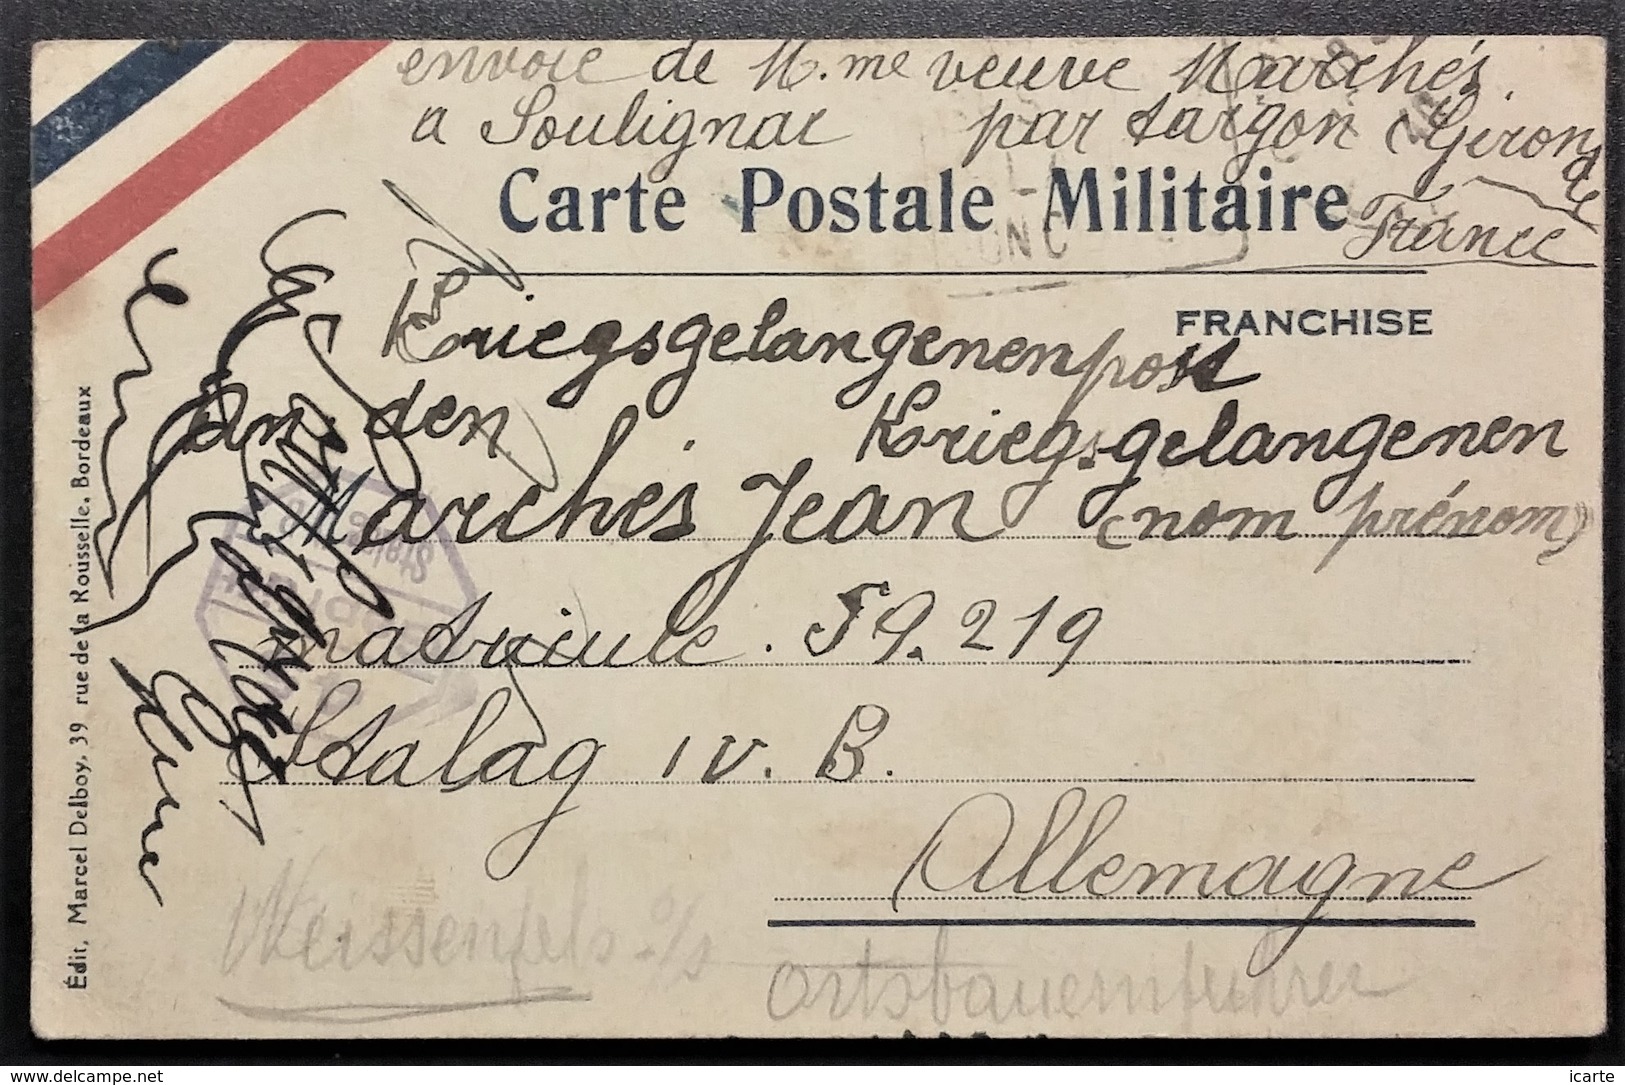 Carte De Franchise Militaire Bandeau Tricolore De Soulignac Vers Prisonnier De Guerre STALAG IV B Mühlberg Aout 1940 - Lettres & Documents